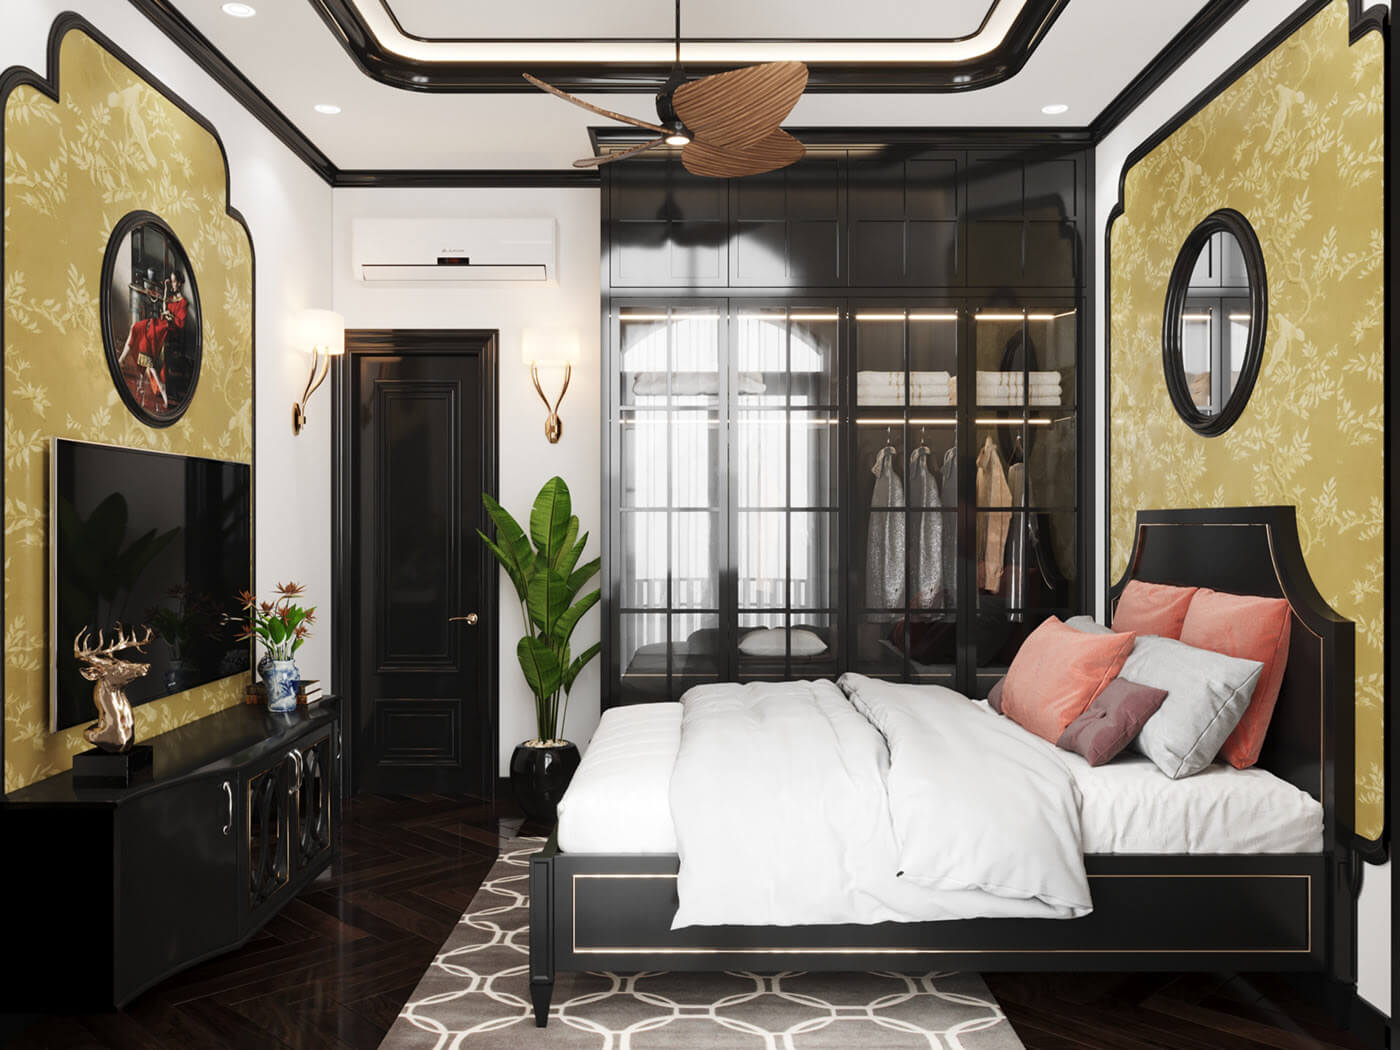 Phòng ngủ Đông Dương được trang trí với các món nội thất mang hơi hướng hiện đại